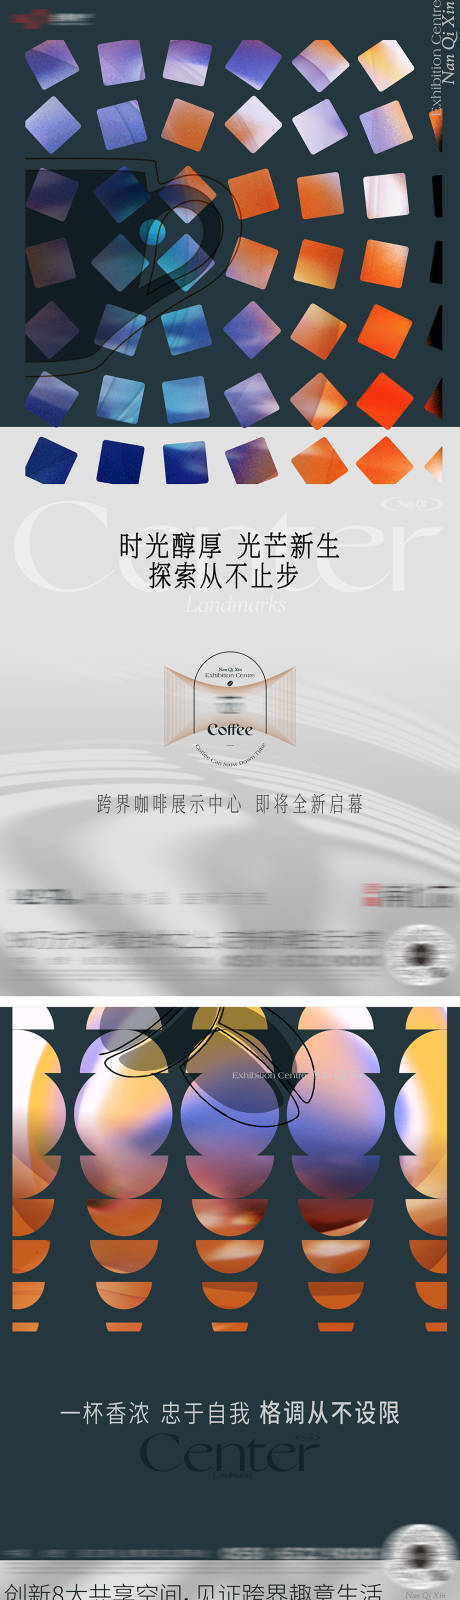 咖啡活动展示中心开放系列价值单图-源文件【享设计】